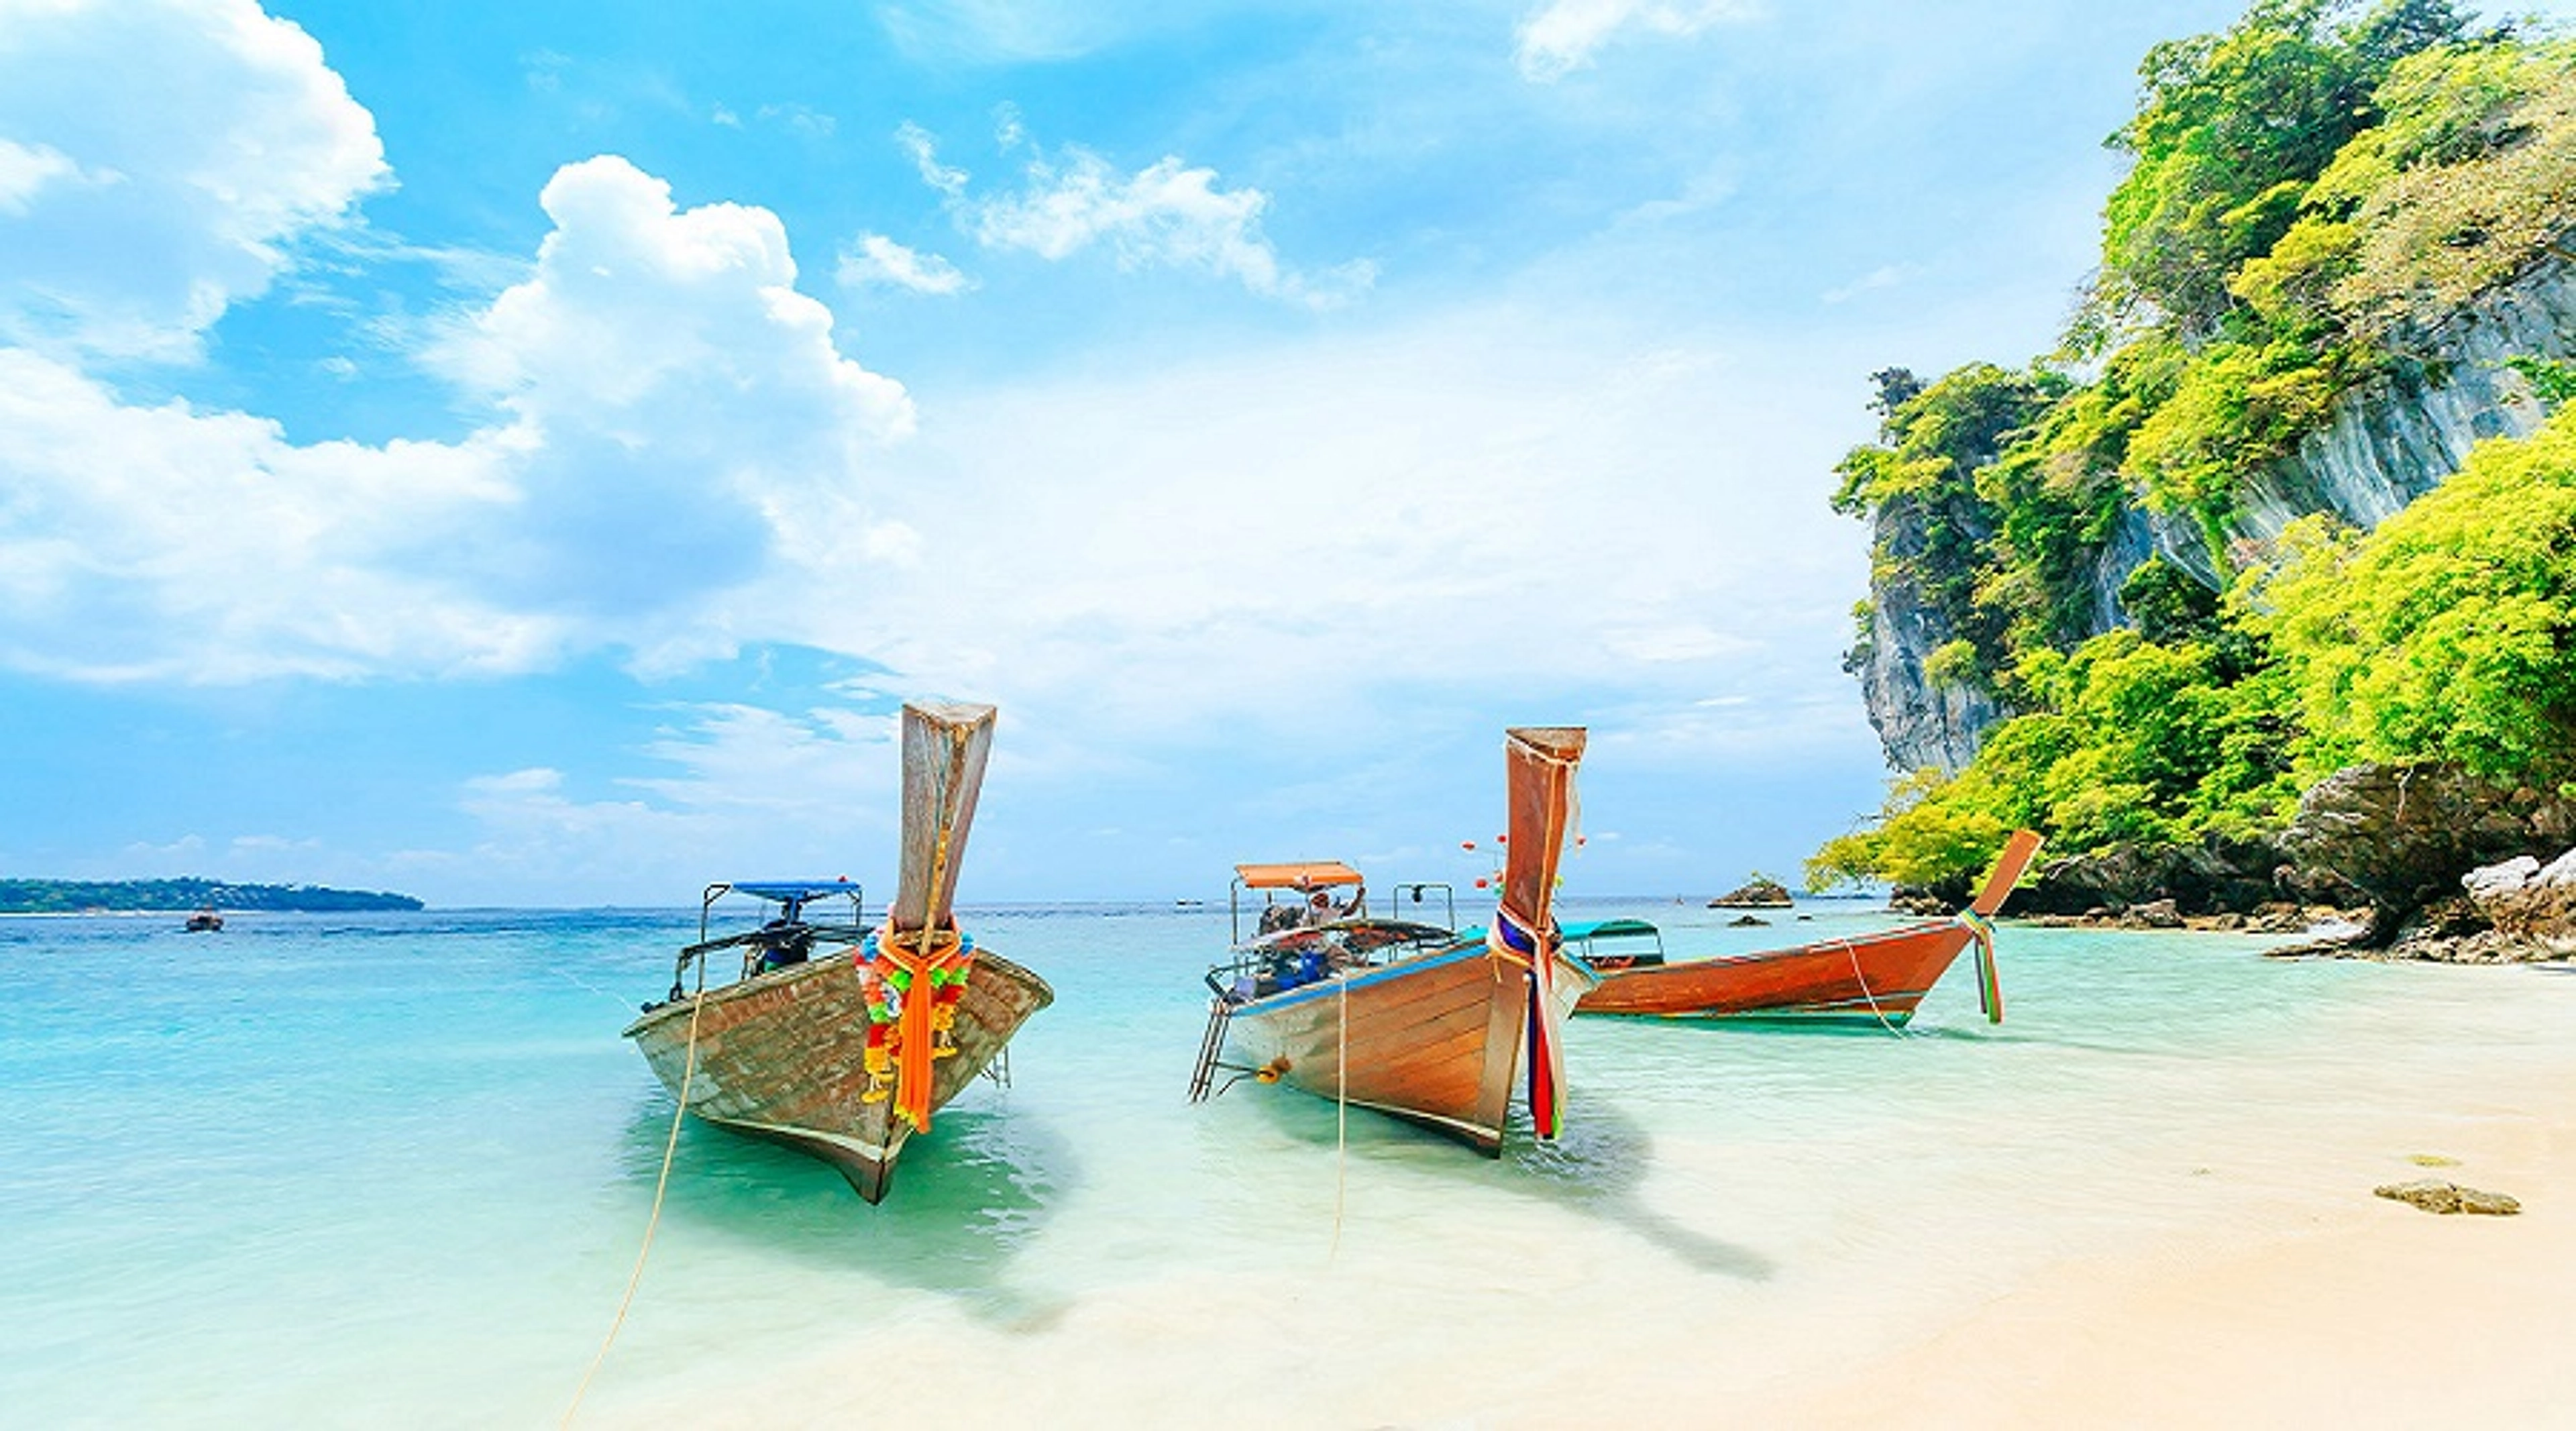 Du lịch Phuket tự túc dễ dàng cùng BDA Trip